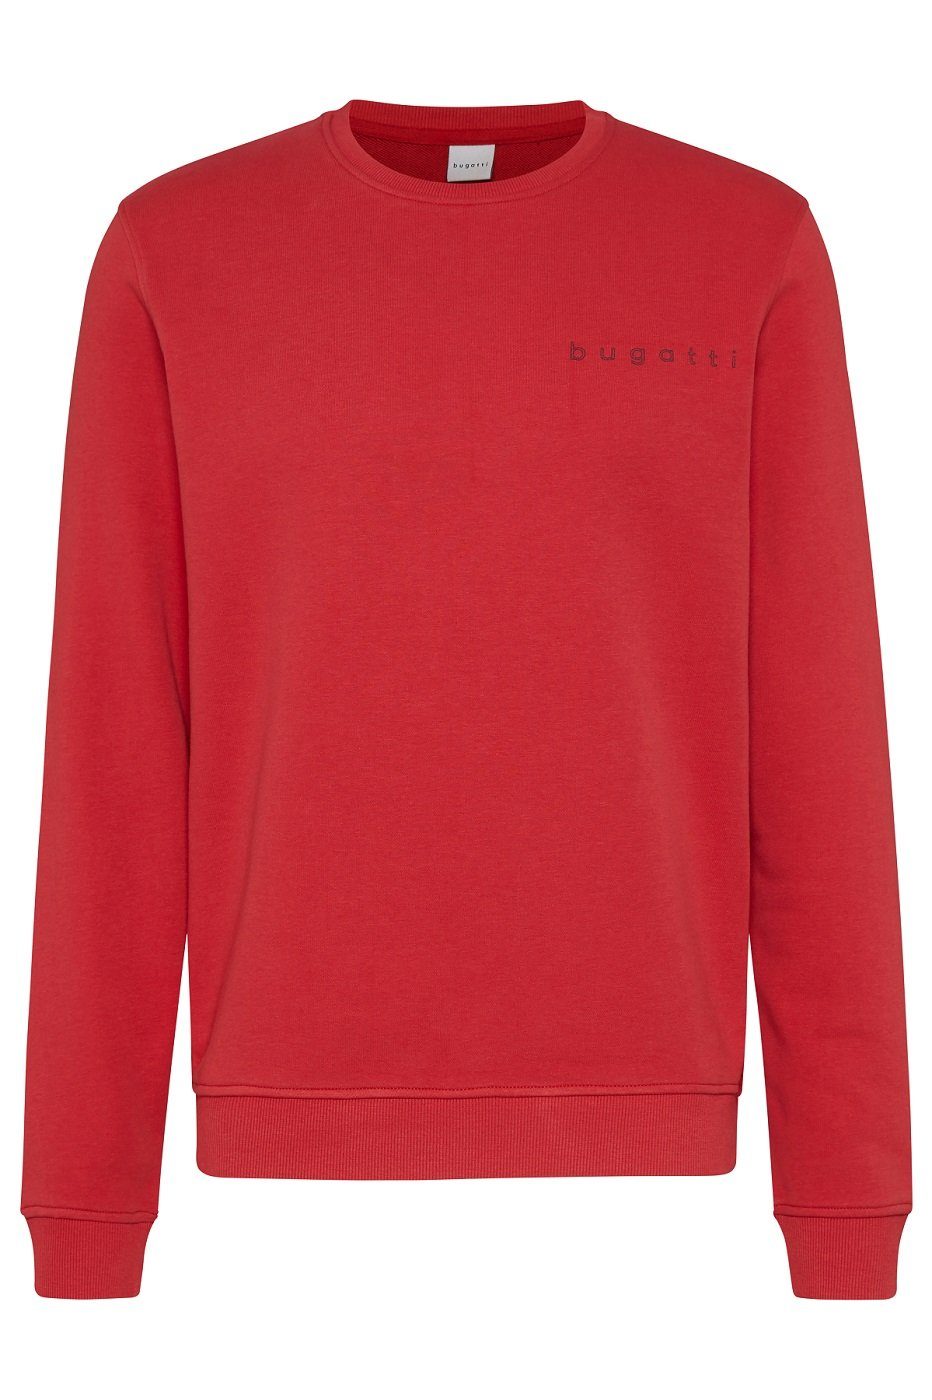 bugatti Sweatshirt 8650-35070 Hoher Anteil an hochwertiger Baumwolle, Modern Fit Rot (950)